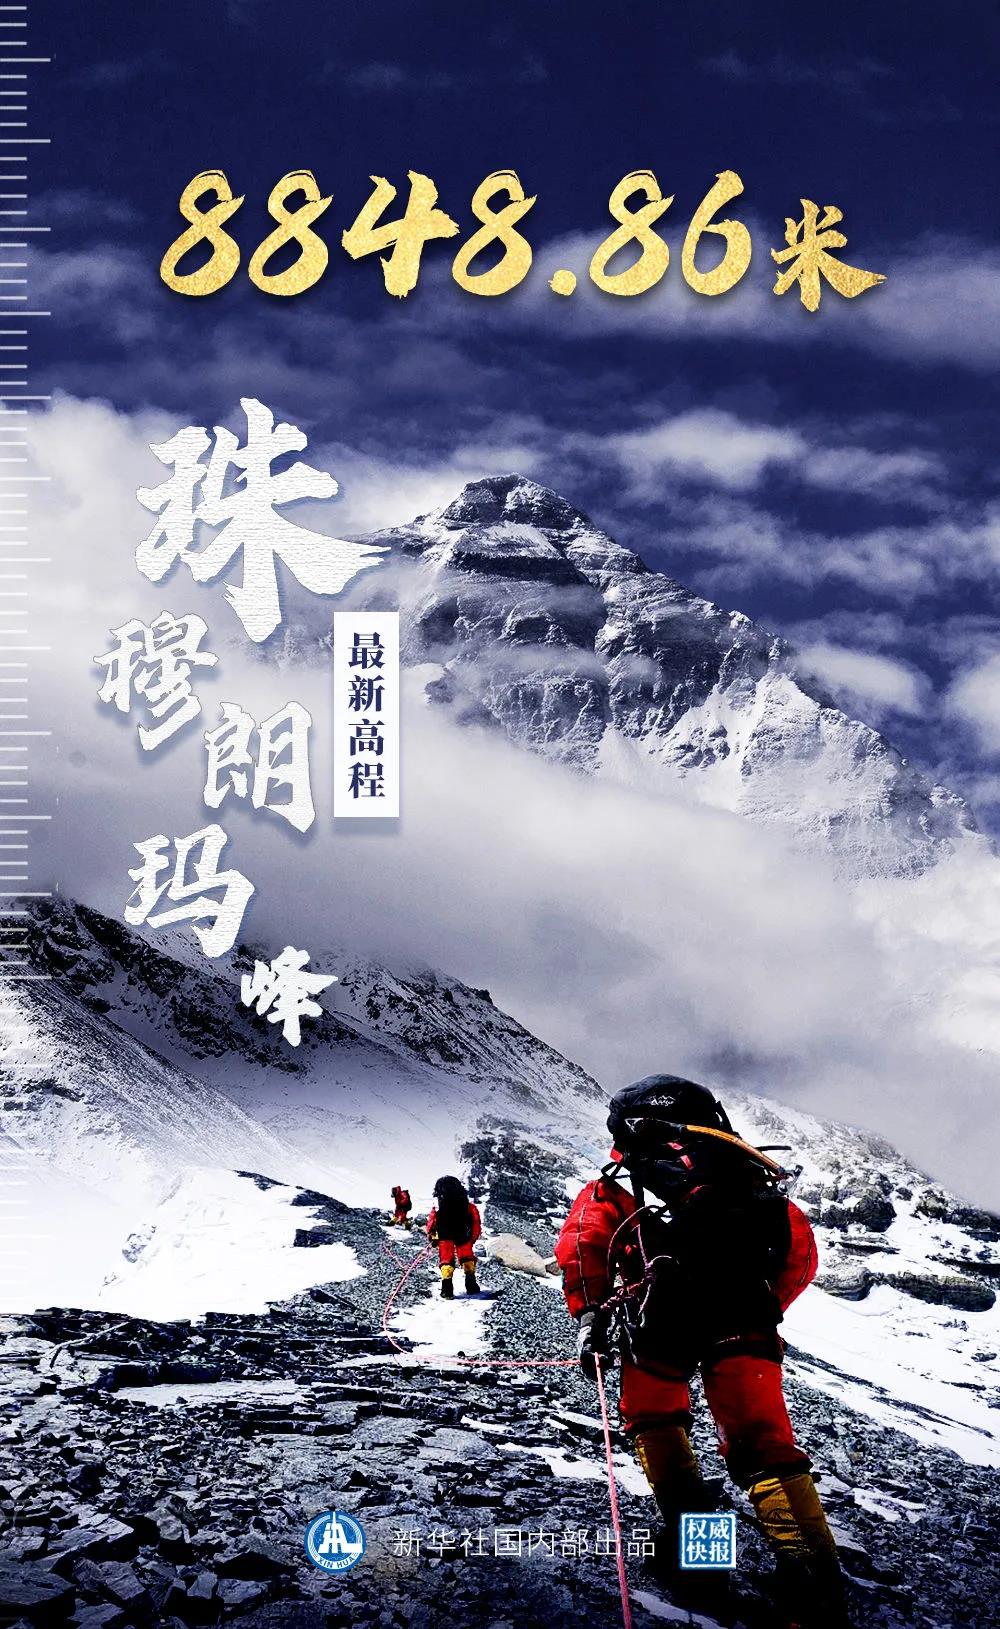 珠穆朗玛峰最新高程——8848.86米